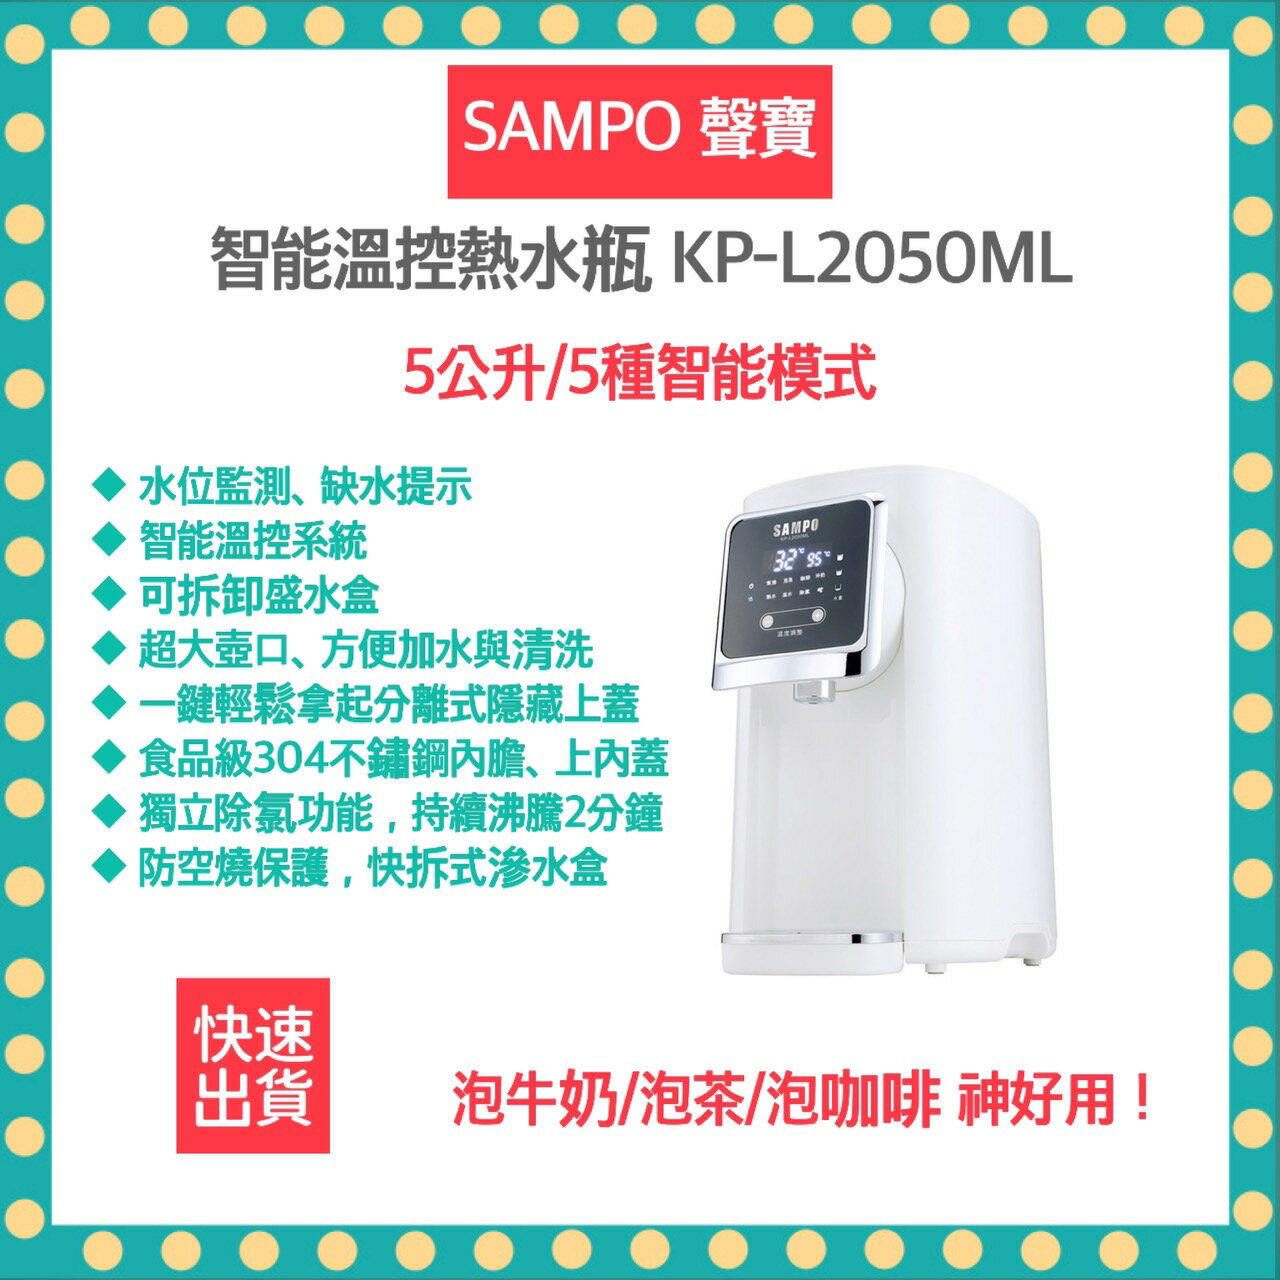 【免運 快速出貨 發票保固】聲寶 SAMPO KP-L2050ML 熱水瓶 快煮壺 5公升熱水瓶 智能溫控熱水瓶